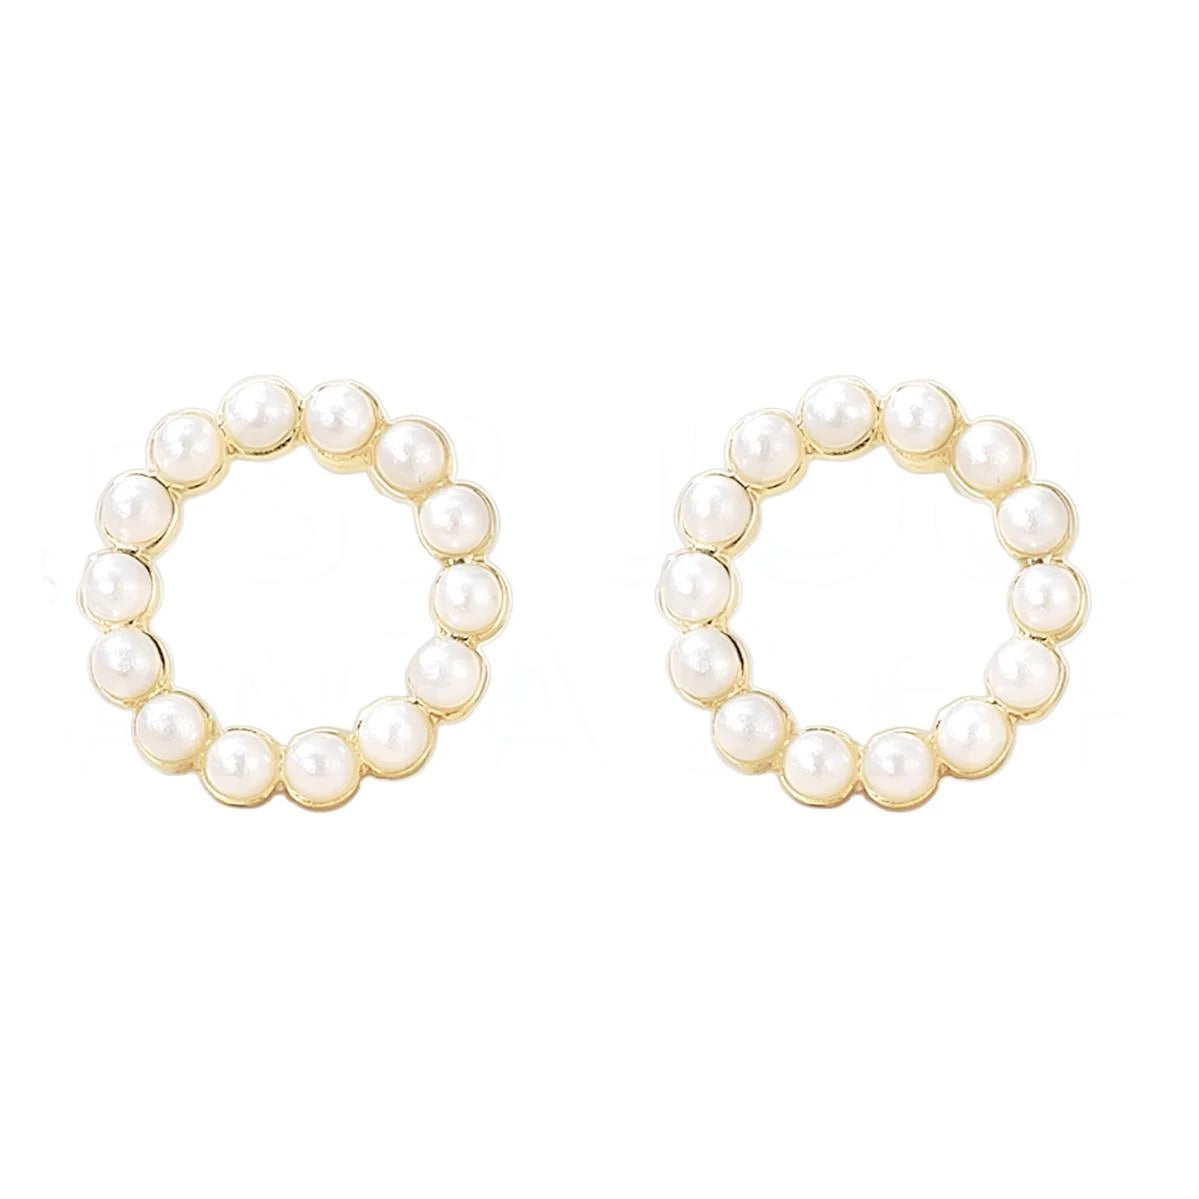 Boucles d'oreilles or anneaux perles 